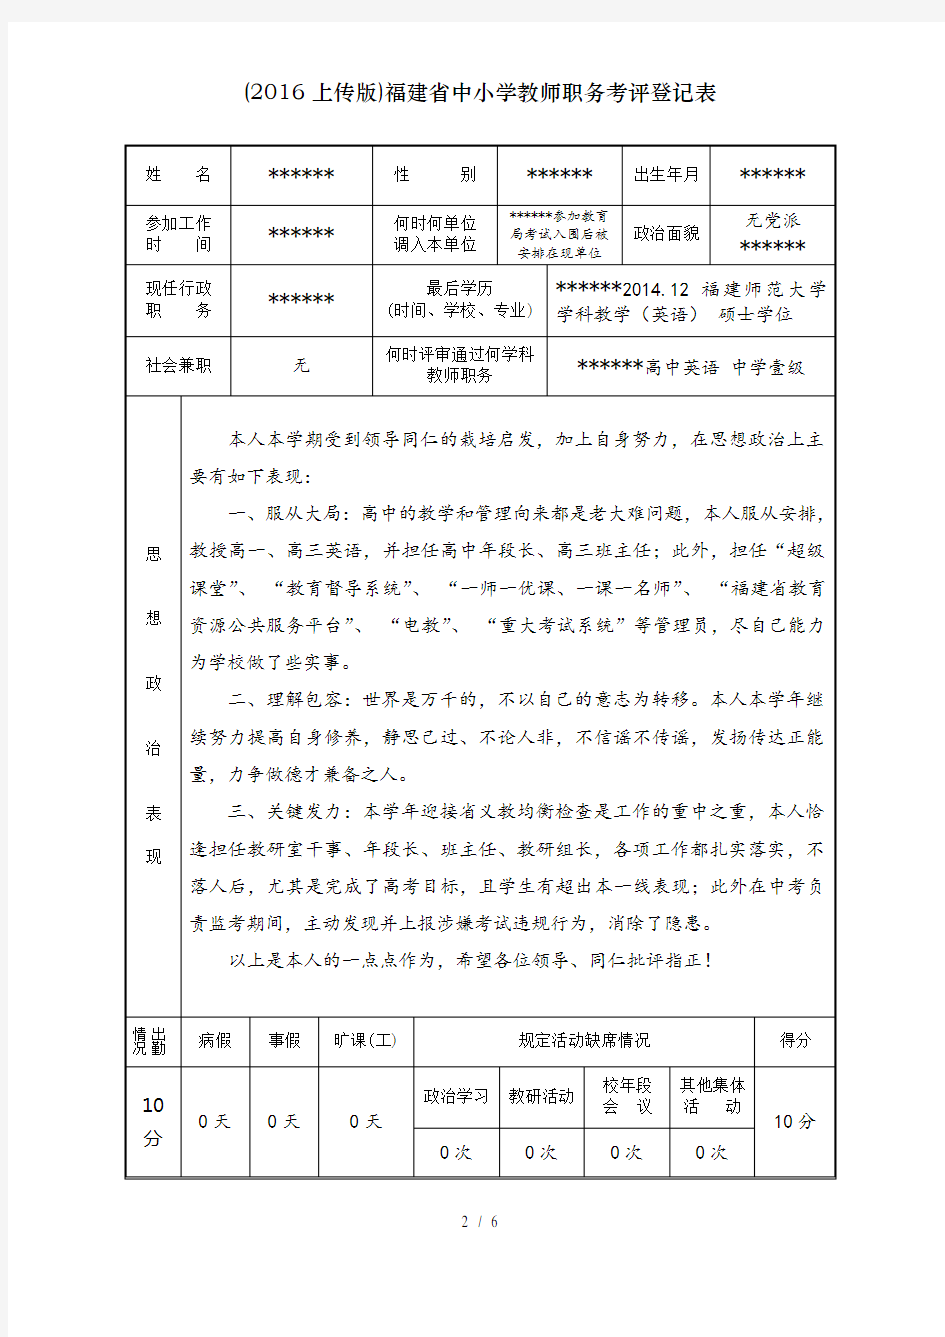 (2016上传版)福建省中小学教师职务考评登记表